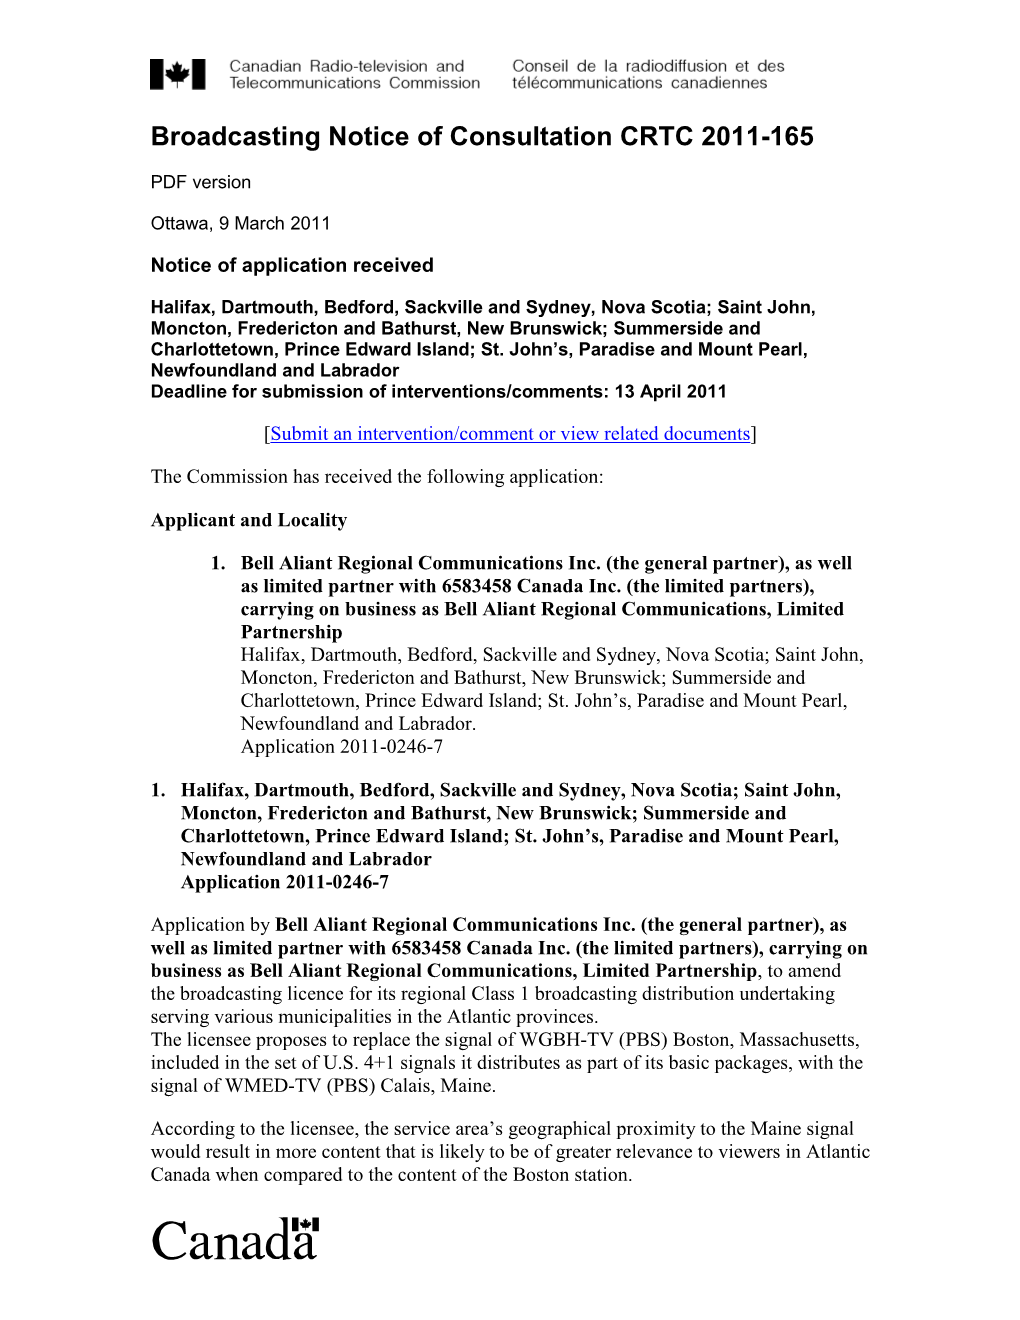 Broadcasting Notice of Consultation CRTC 2011-165